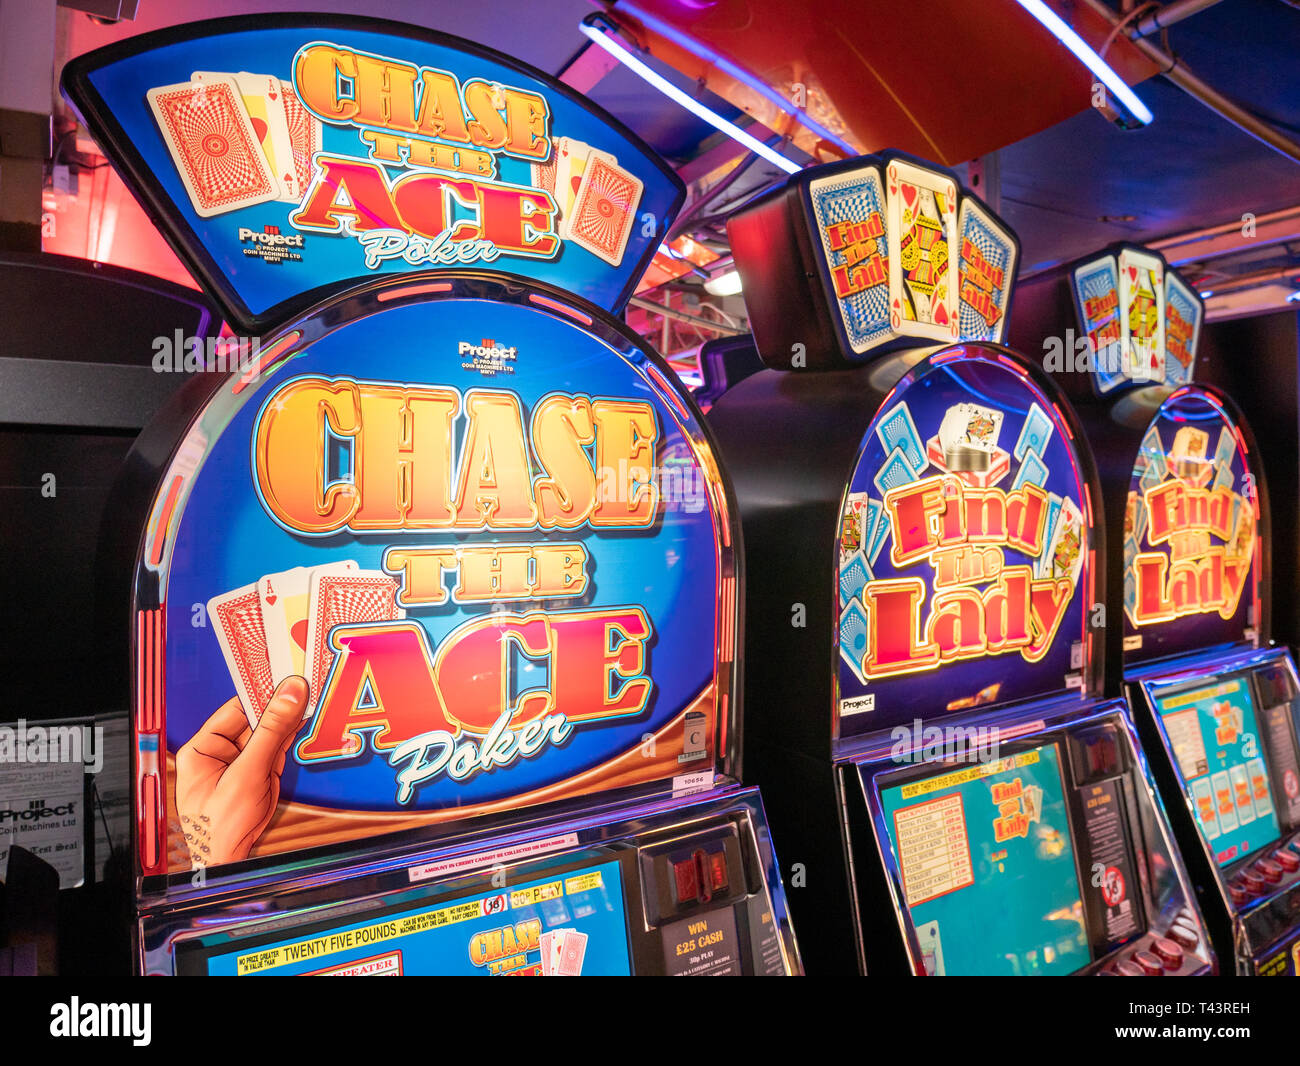 Card game gambling machines, London, UK Stock Photo